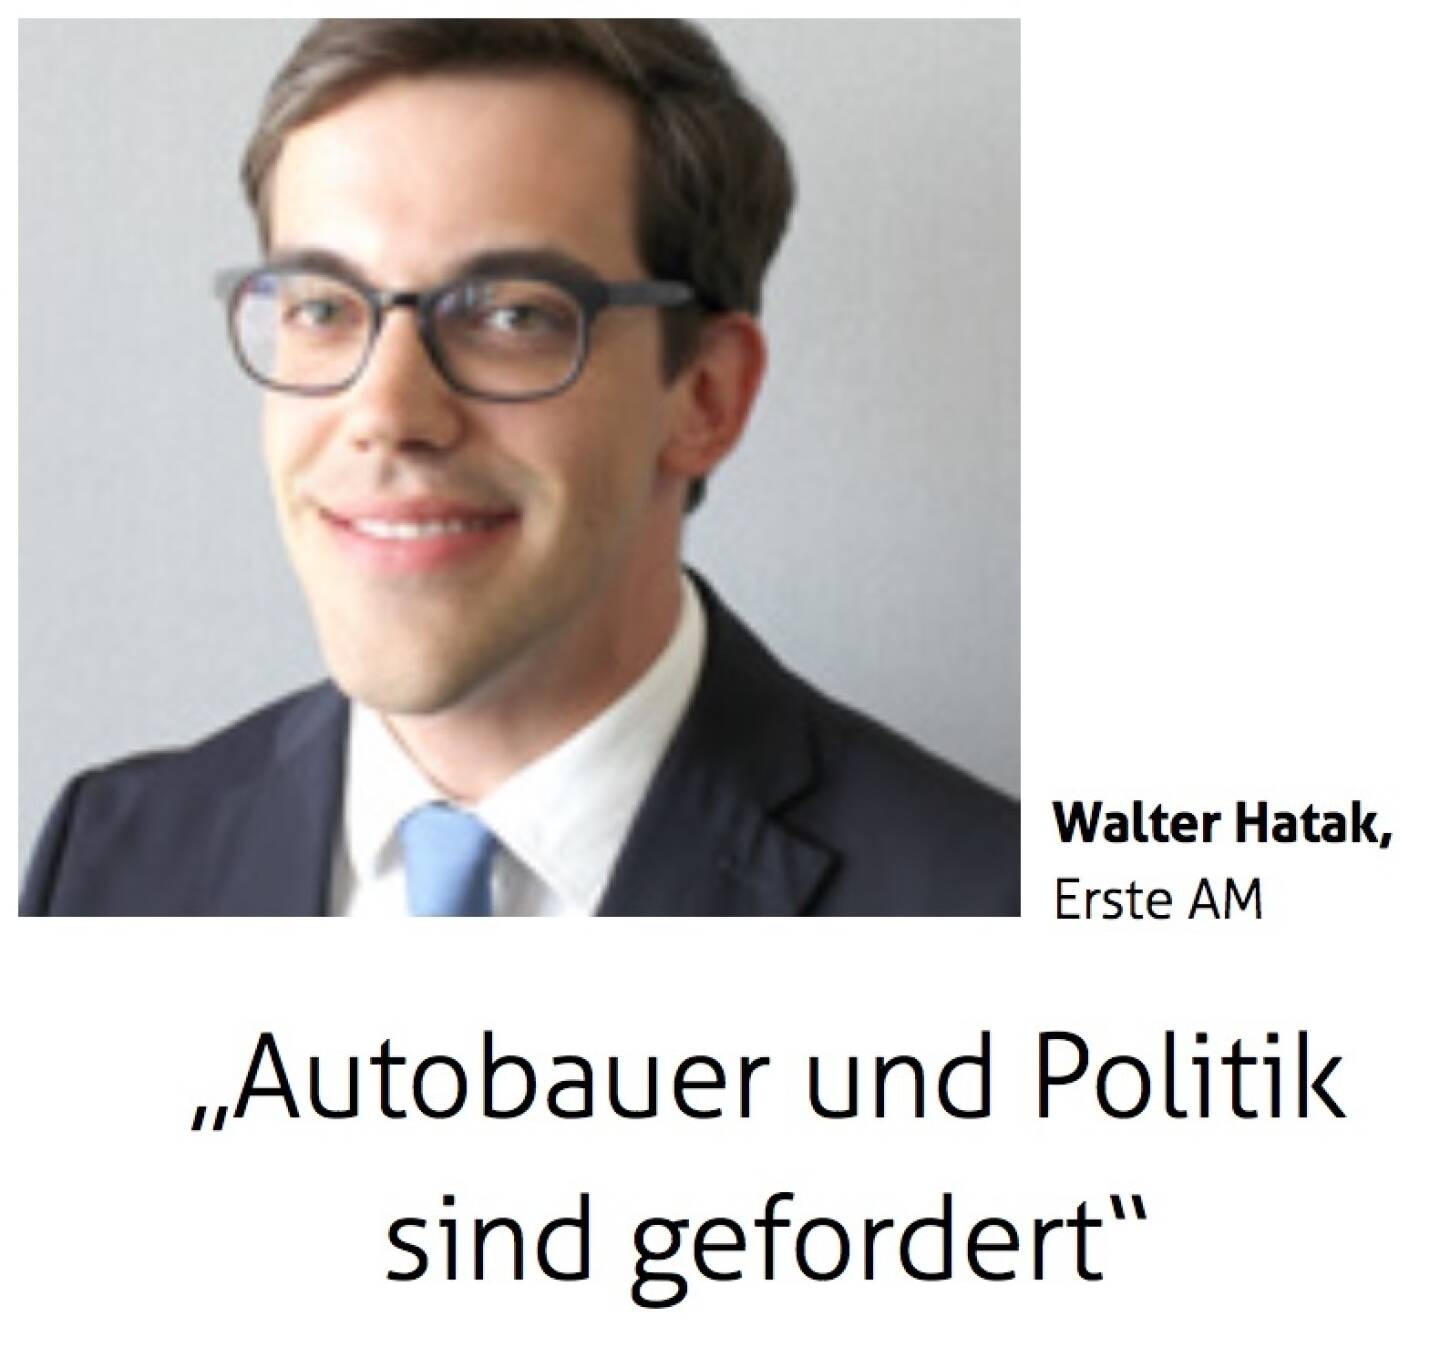 Autobauer und Politik sind gefordert - Walter Hatak, Erste AM